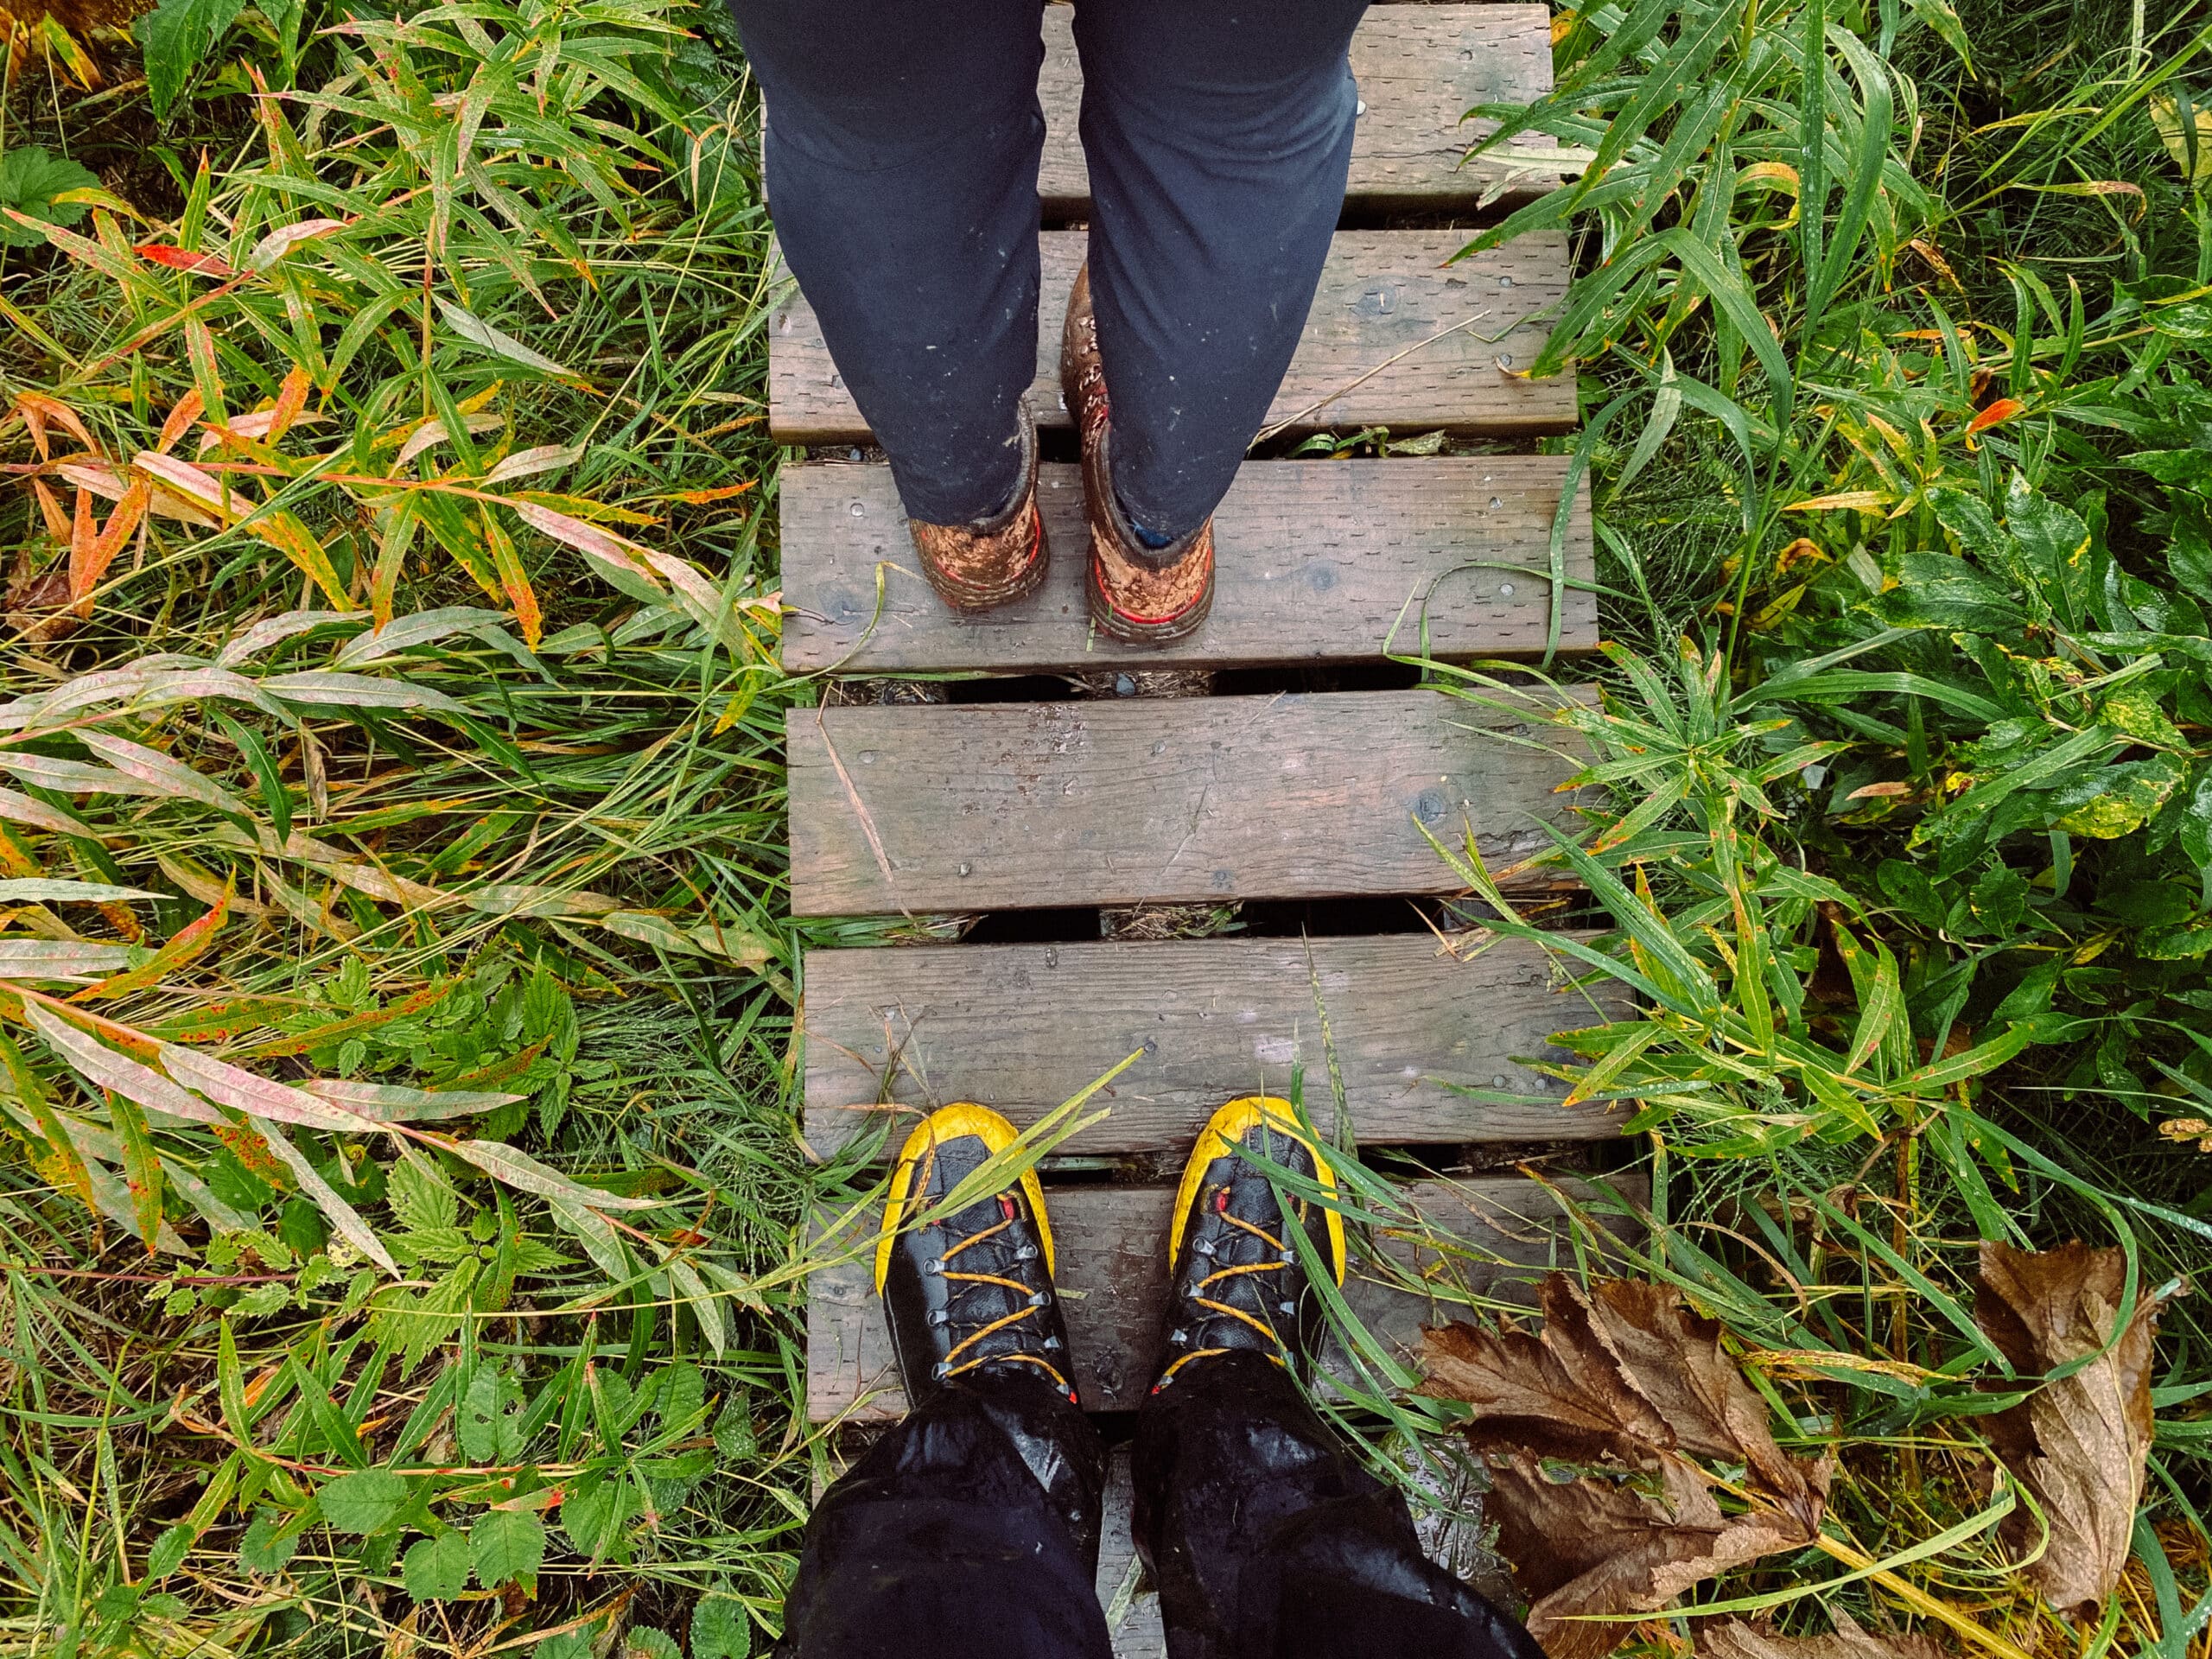 Wet boots worn by two people walking on wooden boardwalk